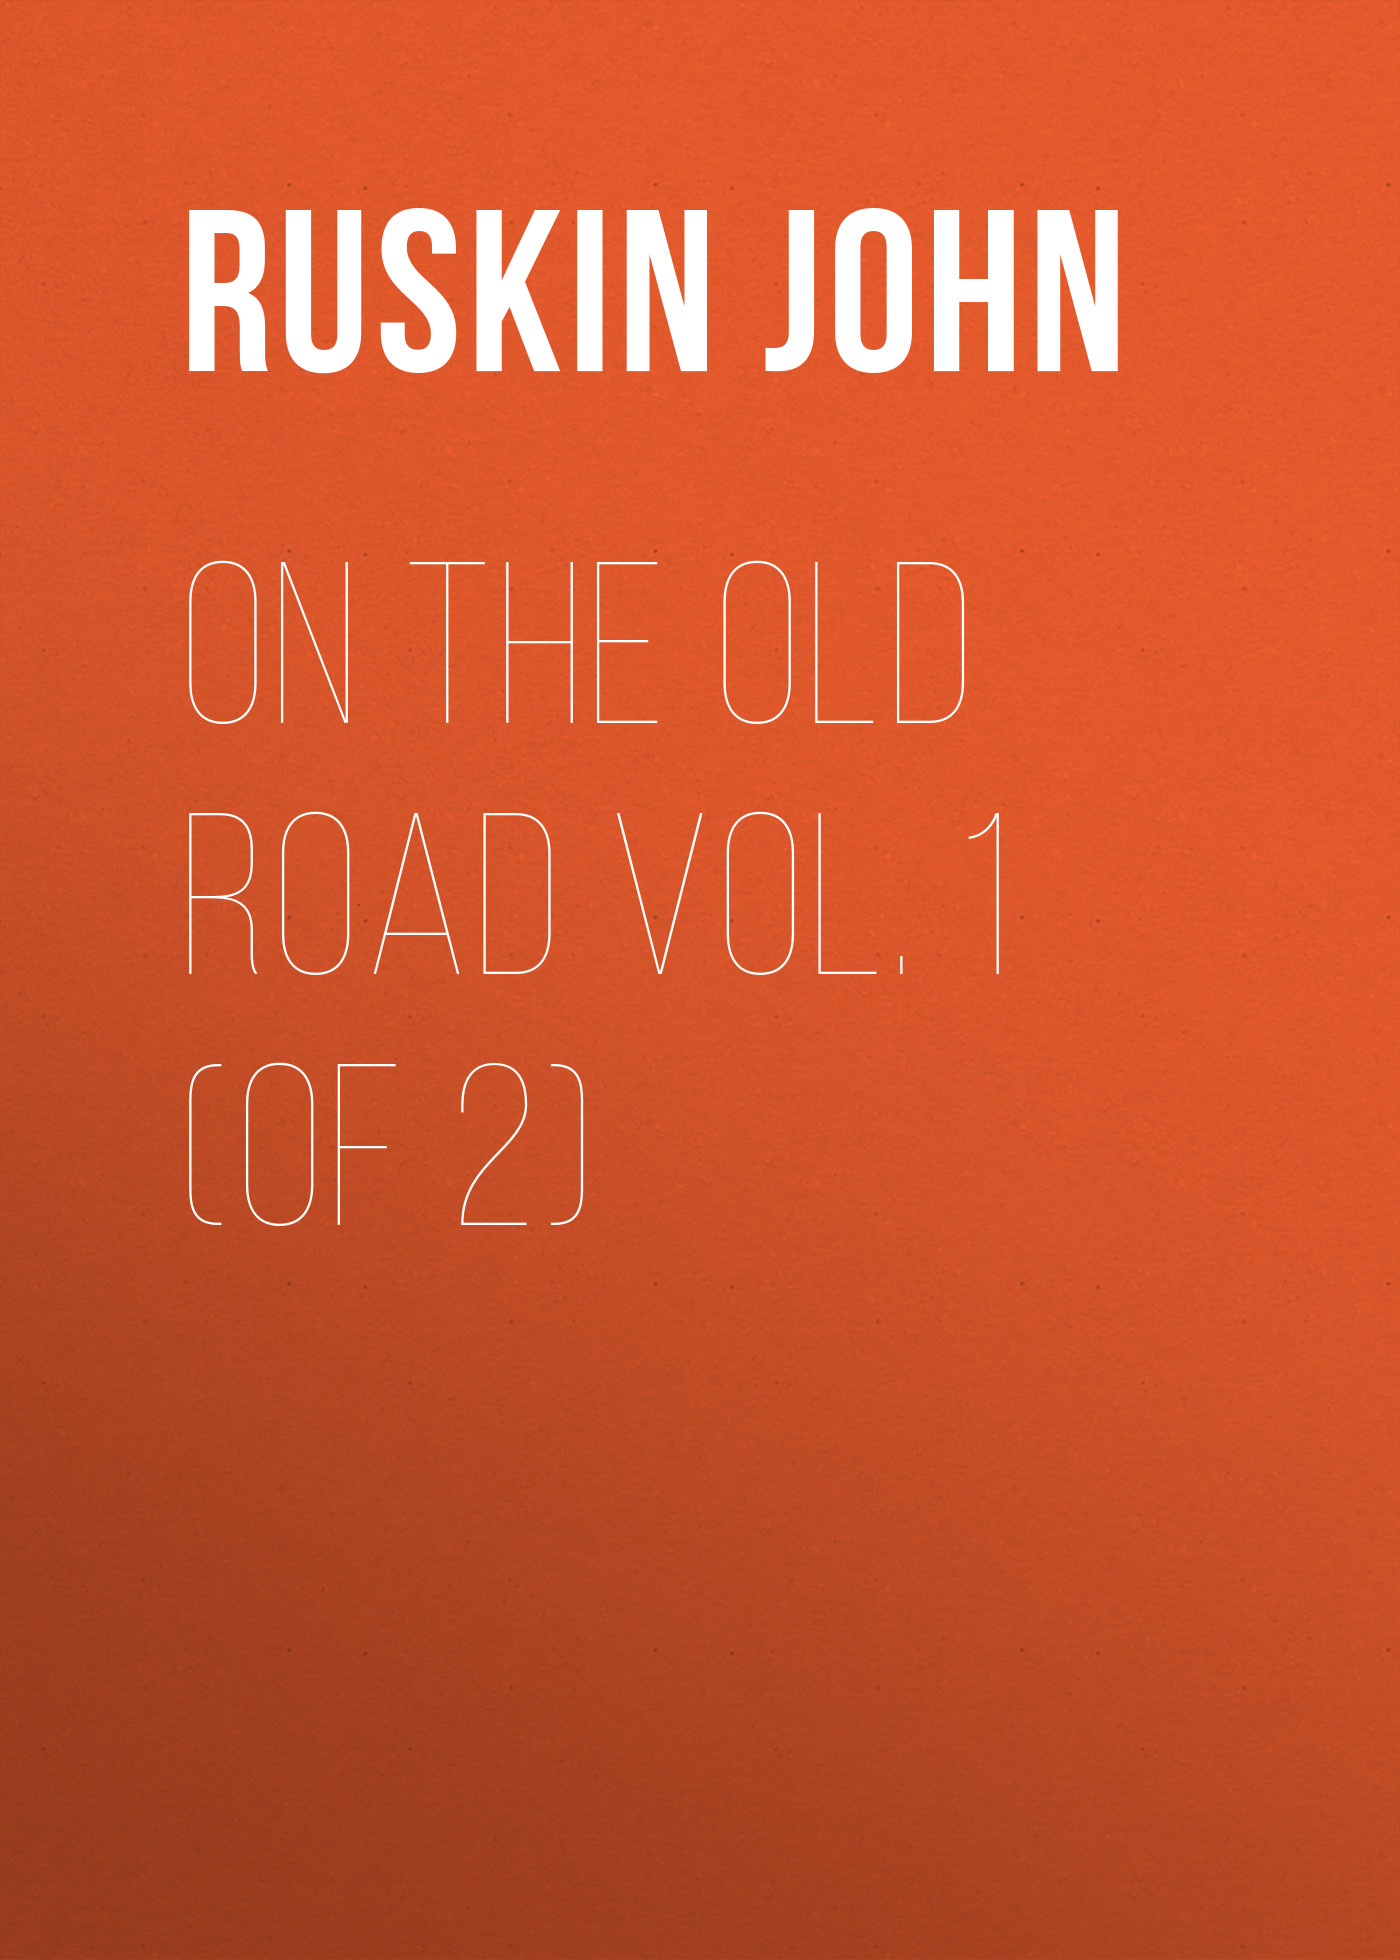 Книга On the Old Road Vol. 1 (of 2) из серии , созданная John Ruskin, может относится к жанру Зарубежная старинная литература, Зарубежная прикладная и научно-популярная литература, Литература 19 века, Изобразительное искусство, фотография. Стоимость электронной книги On the Old Road Vol. 1 (of 2) с идентификатором 34839958 составляет 0 руб.